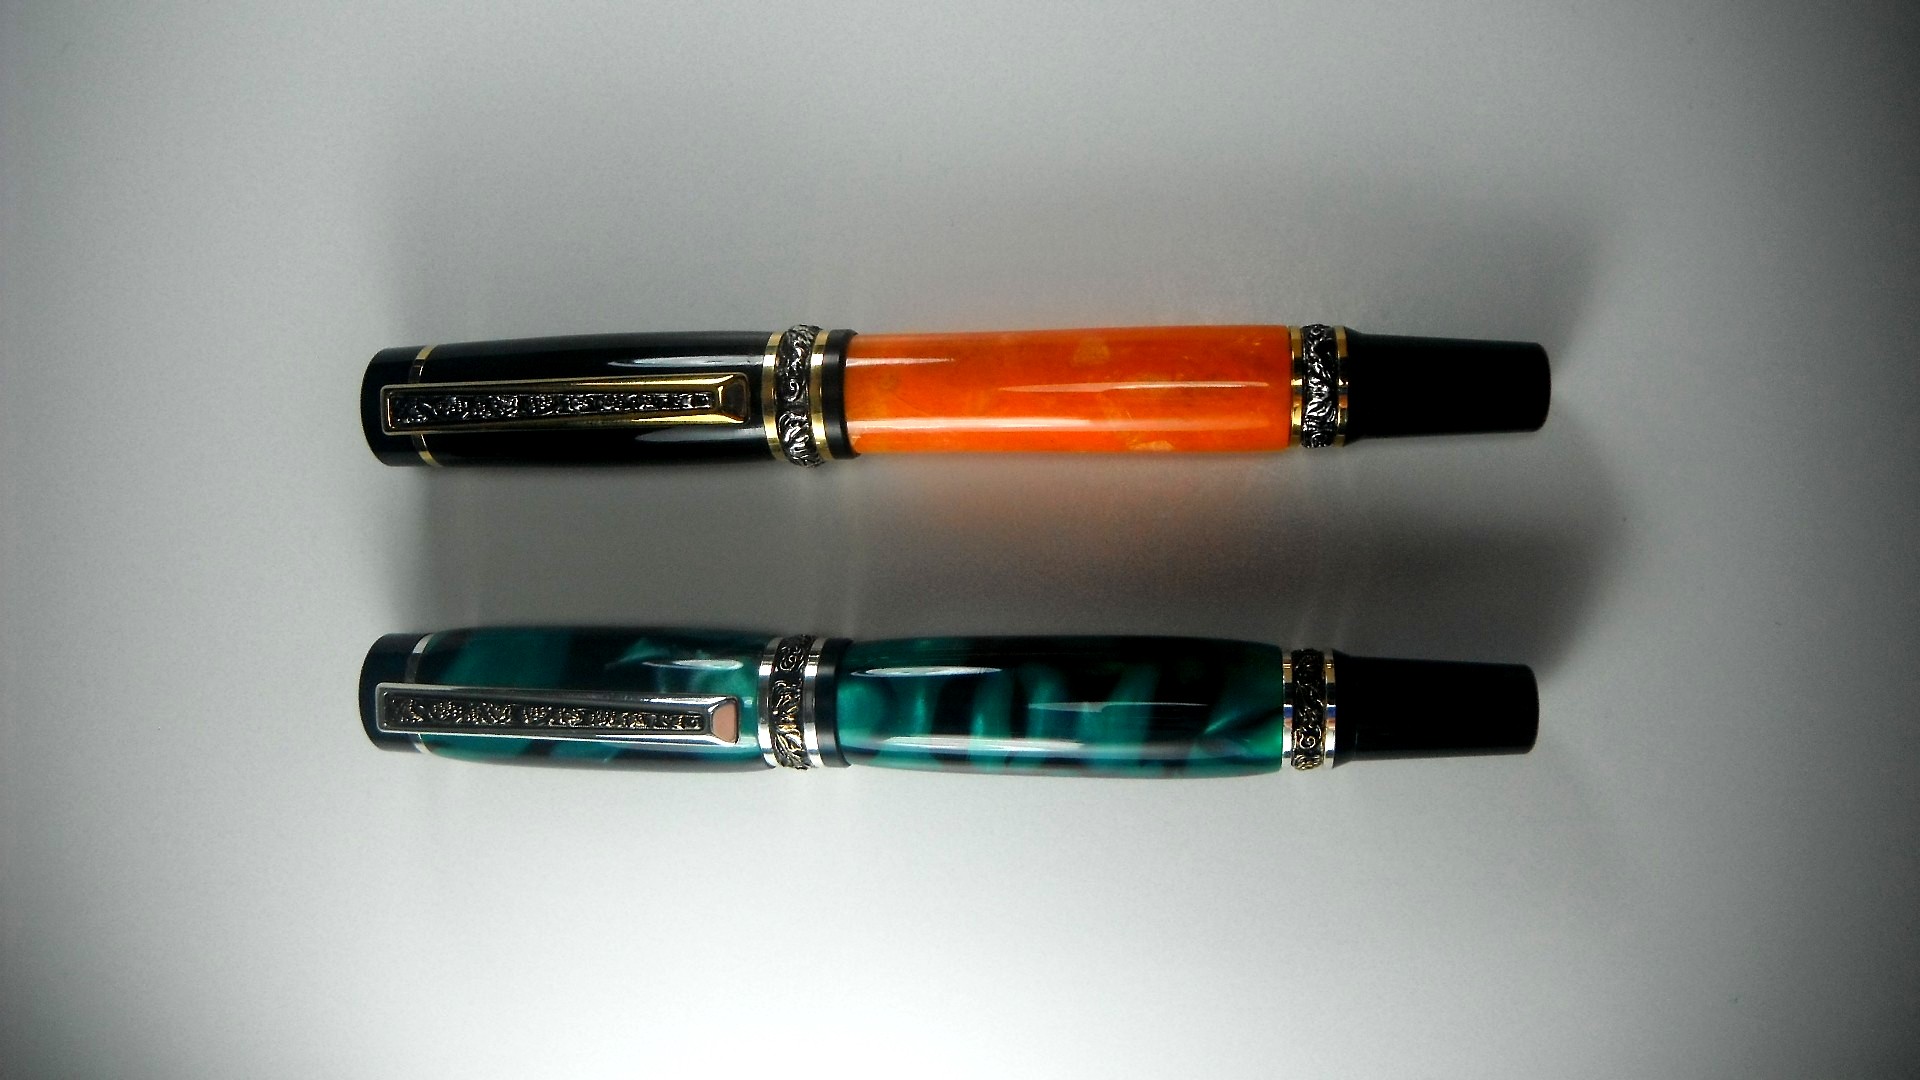 Two Cambrdge Fountain Pens